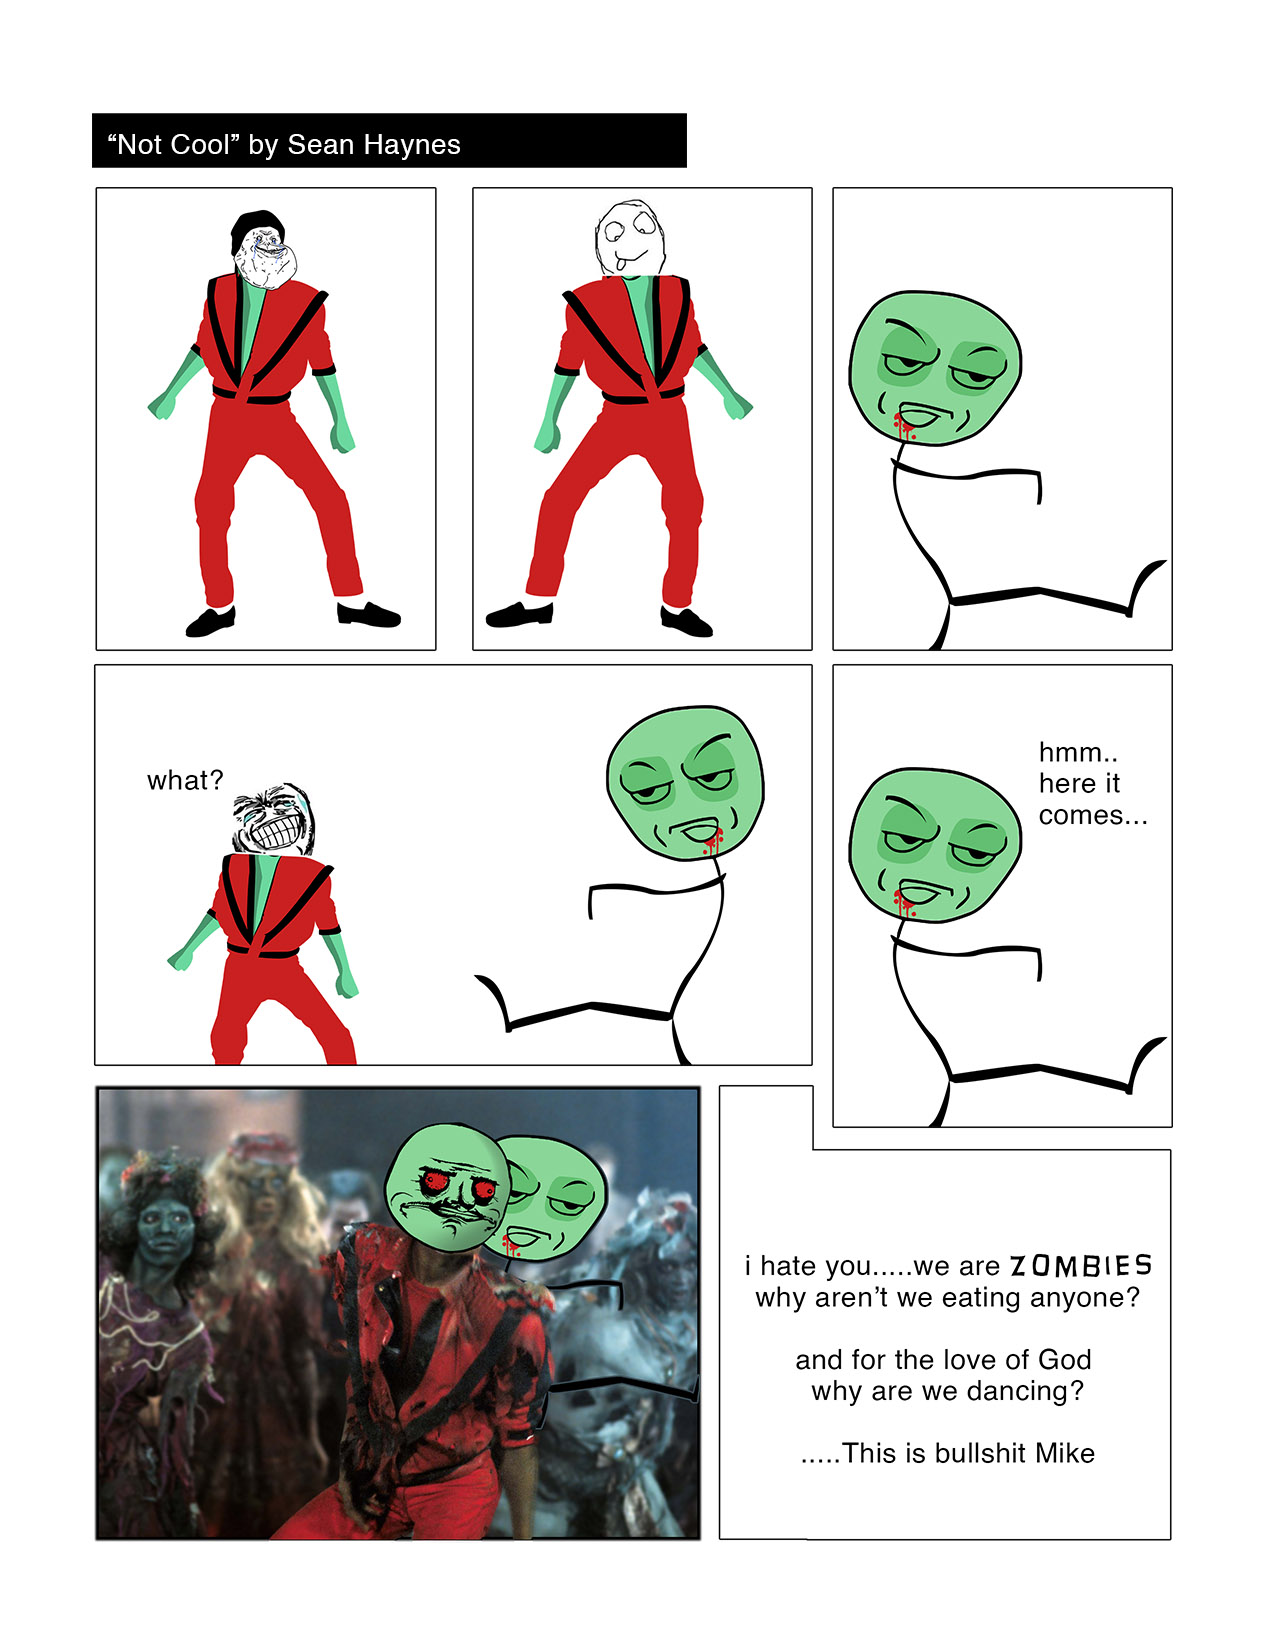 Zombie I hate you - meme